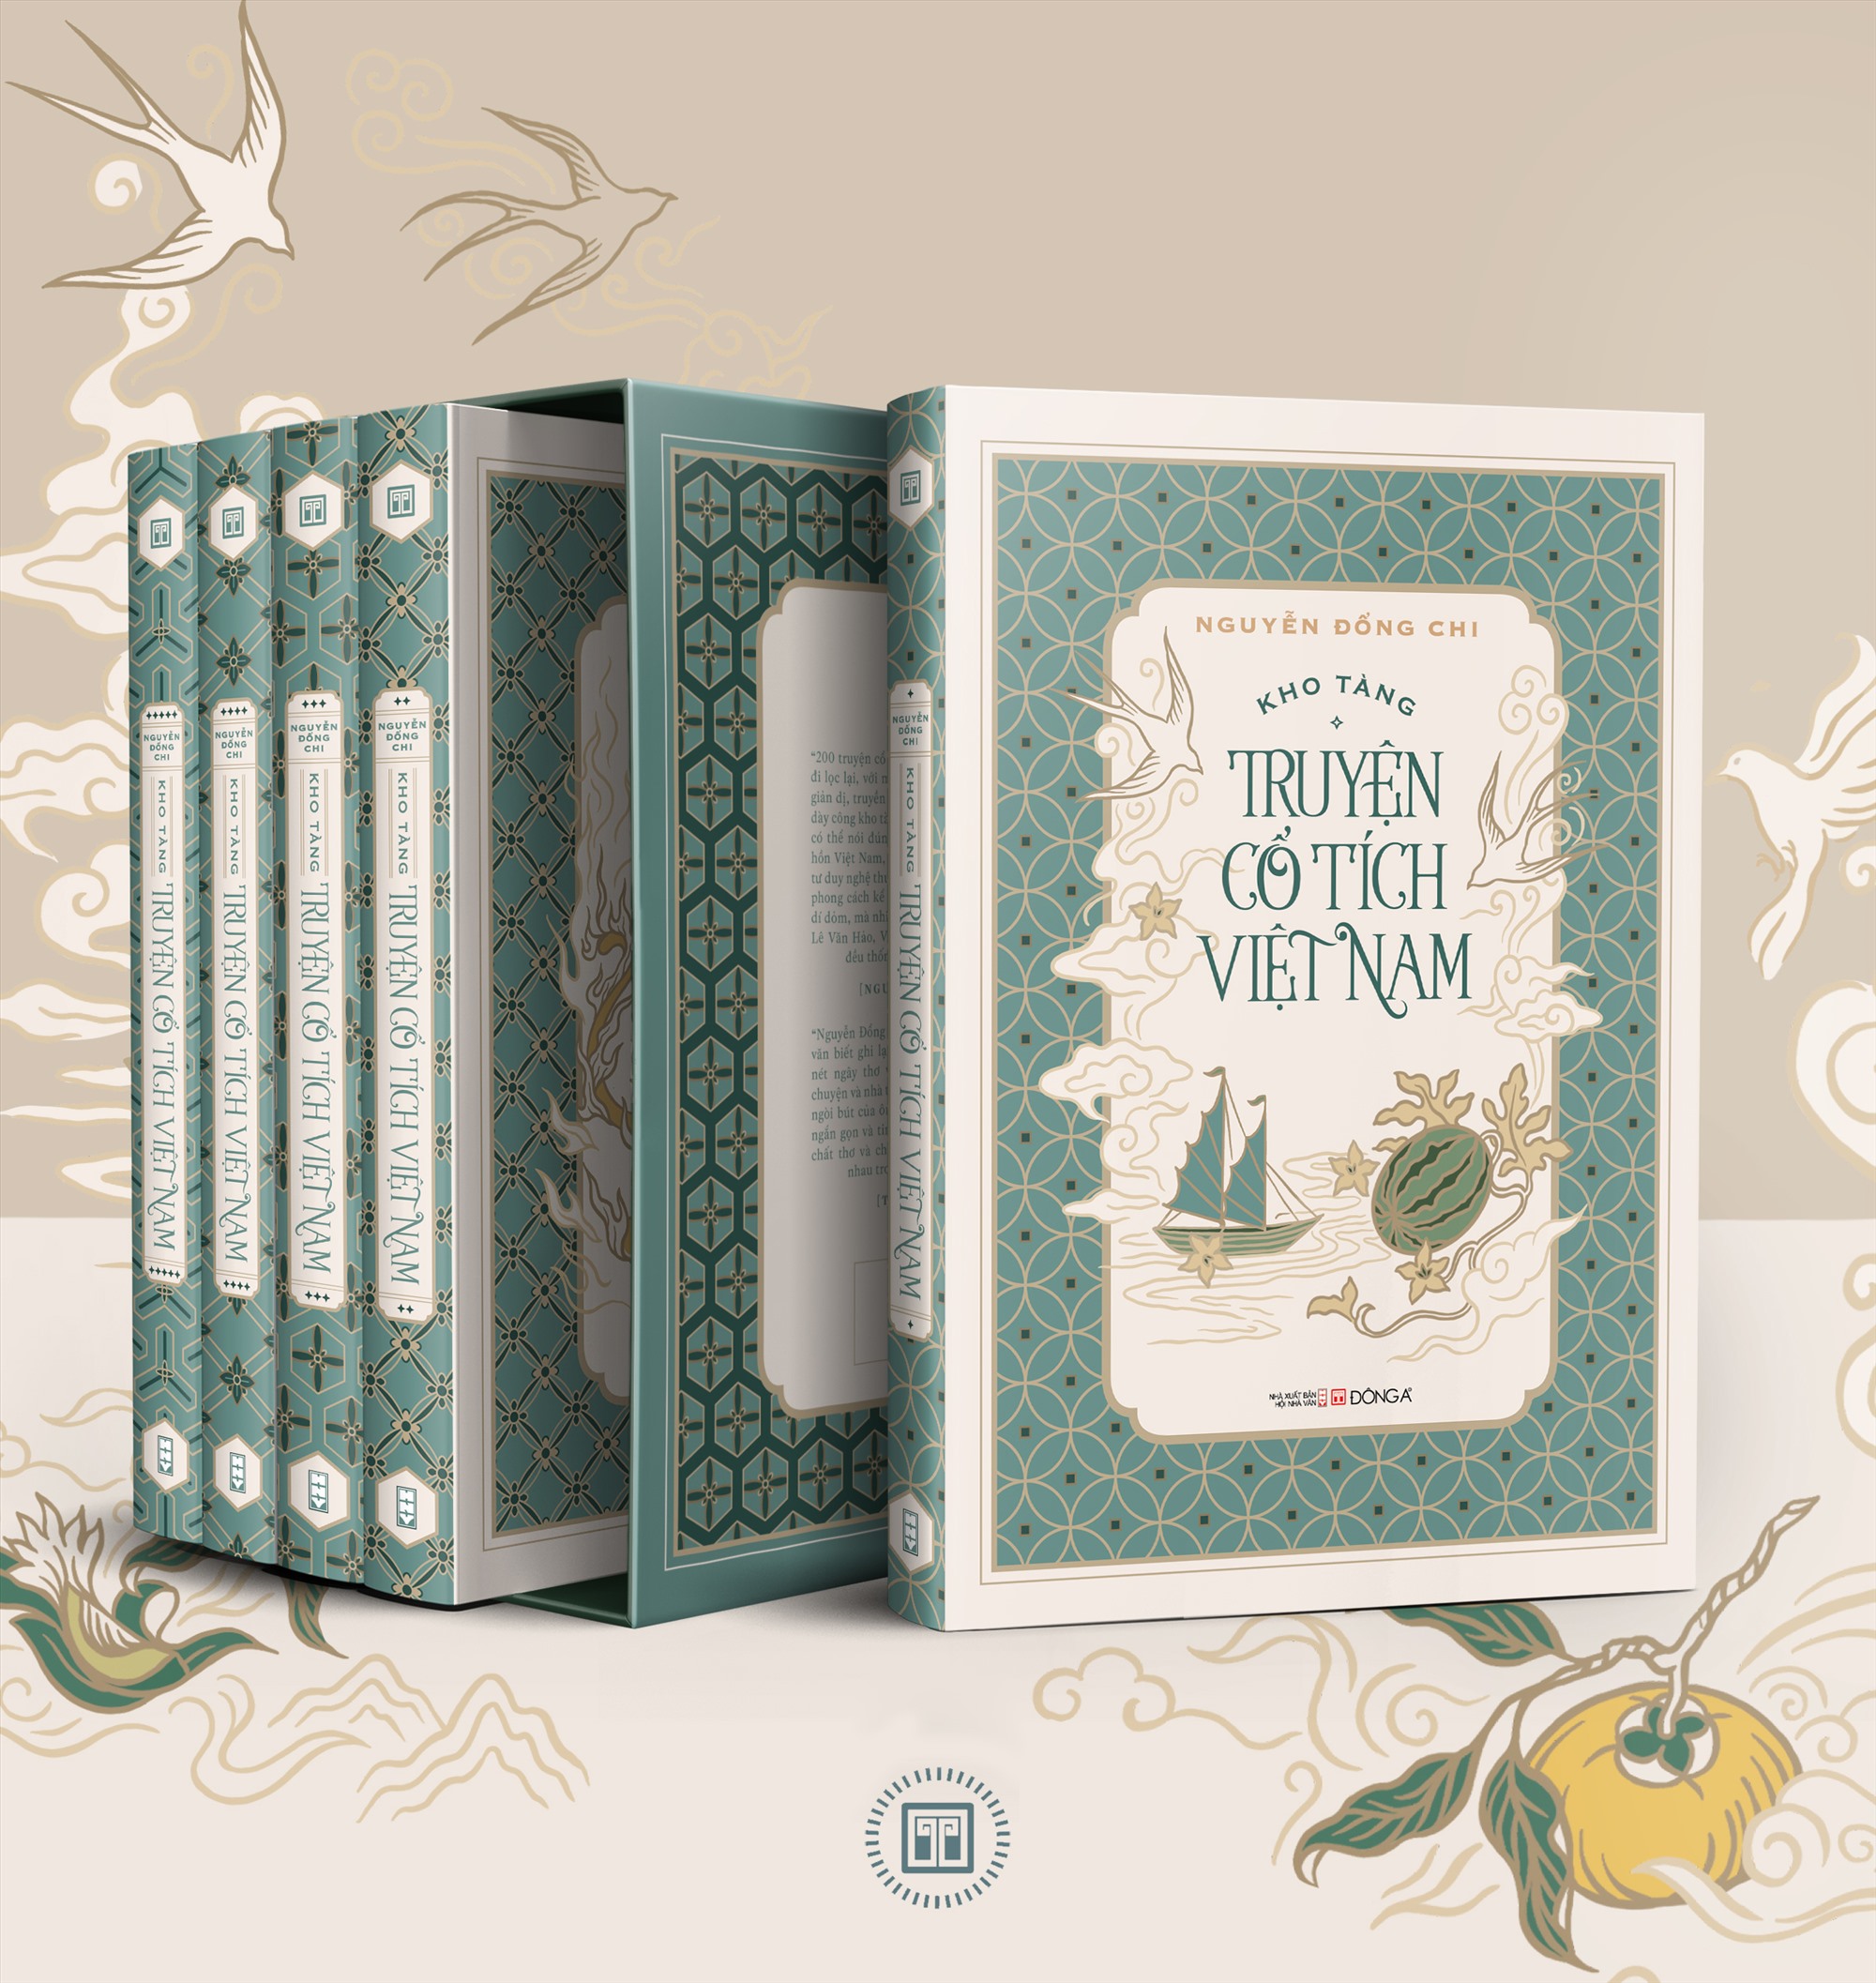 “Kho tàng truyện cổ tích Việt Nam” tái bản trọn bộ